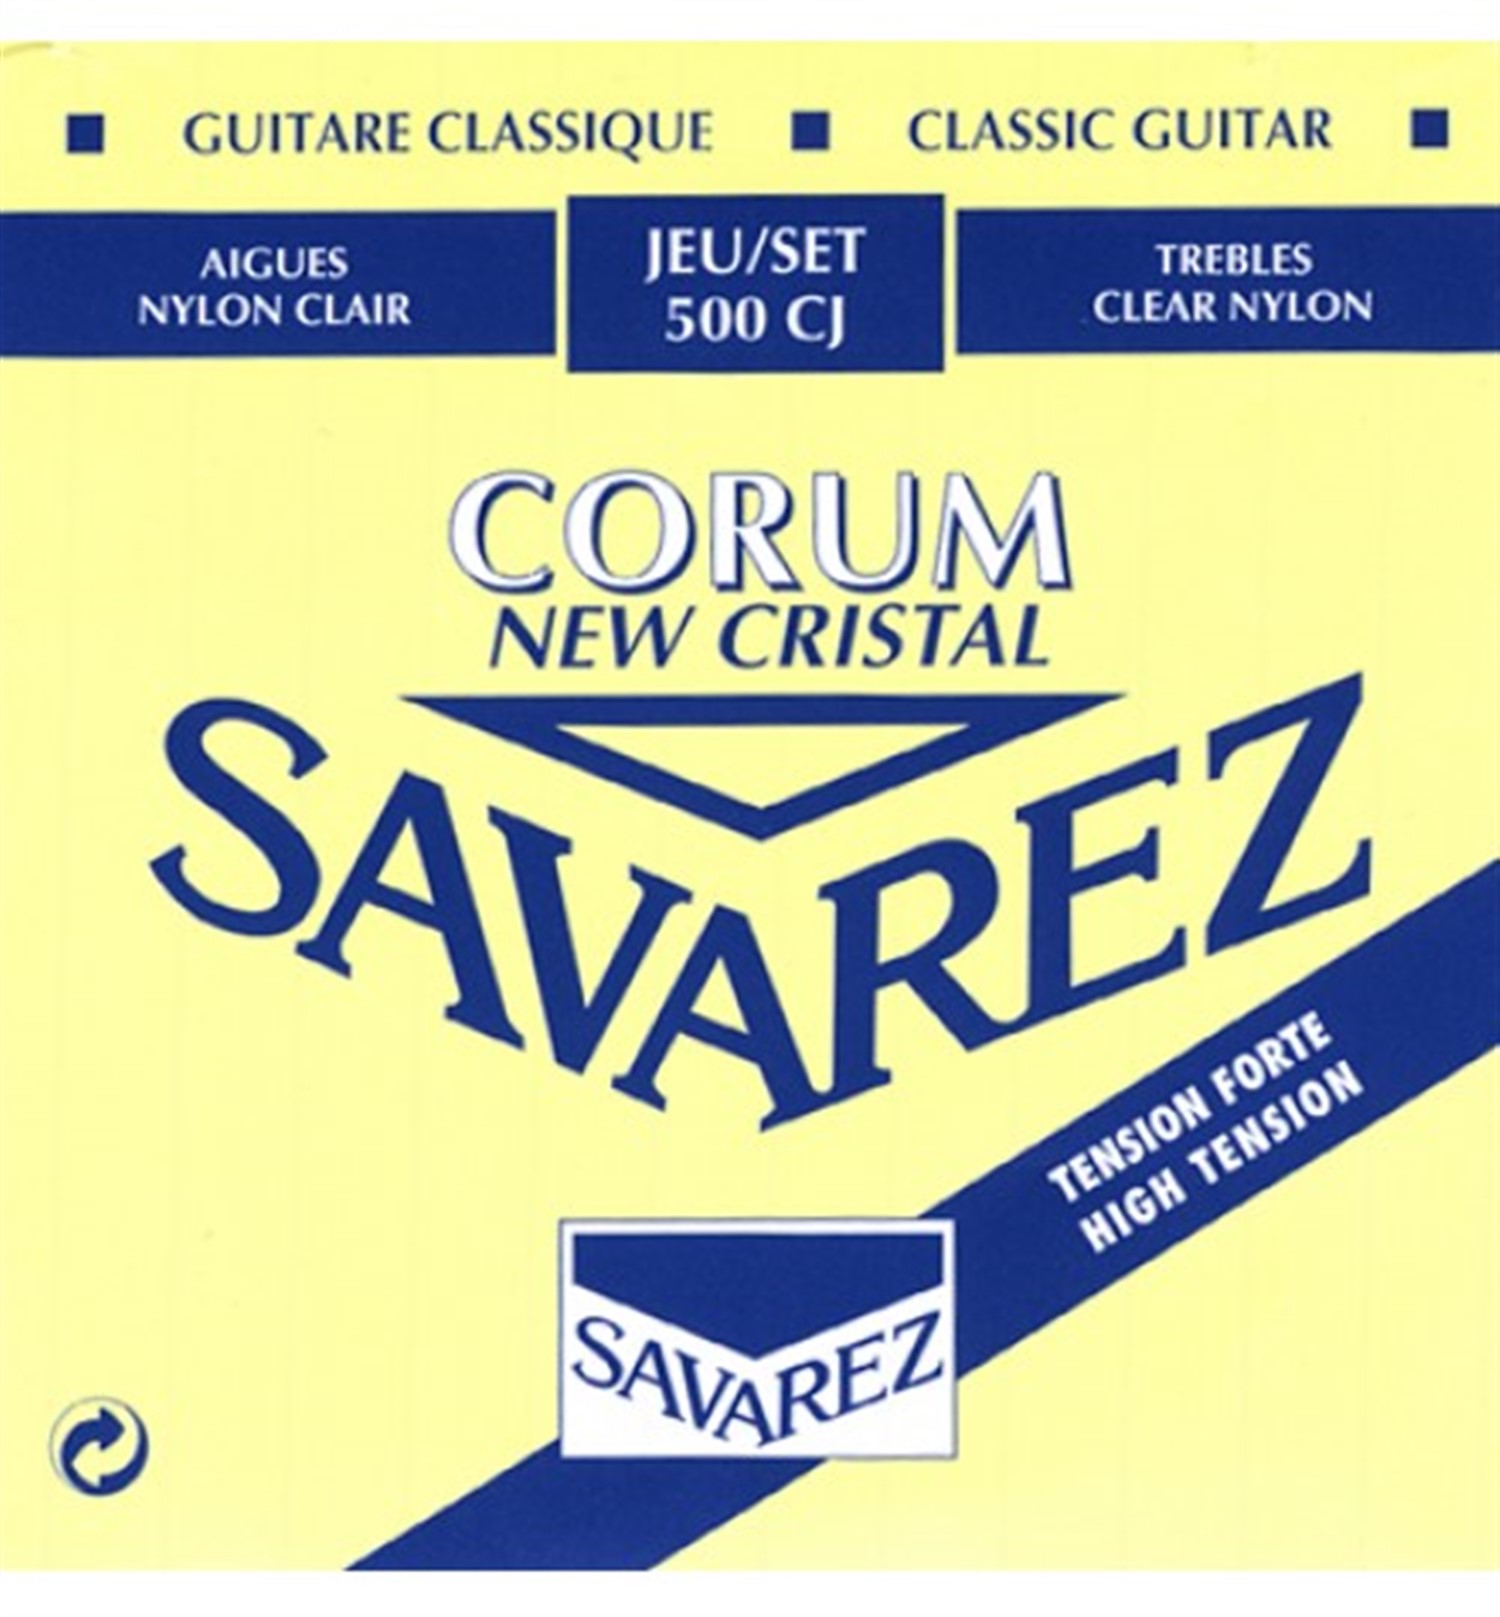 Savarez струны для классической гитары. Саварез струны 500 CJ. Струны для гитары Savarez 540j. Savarez Classical Corum High tension. Струны Саварез для классической.